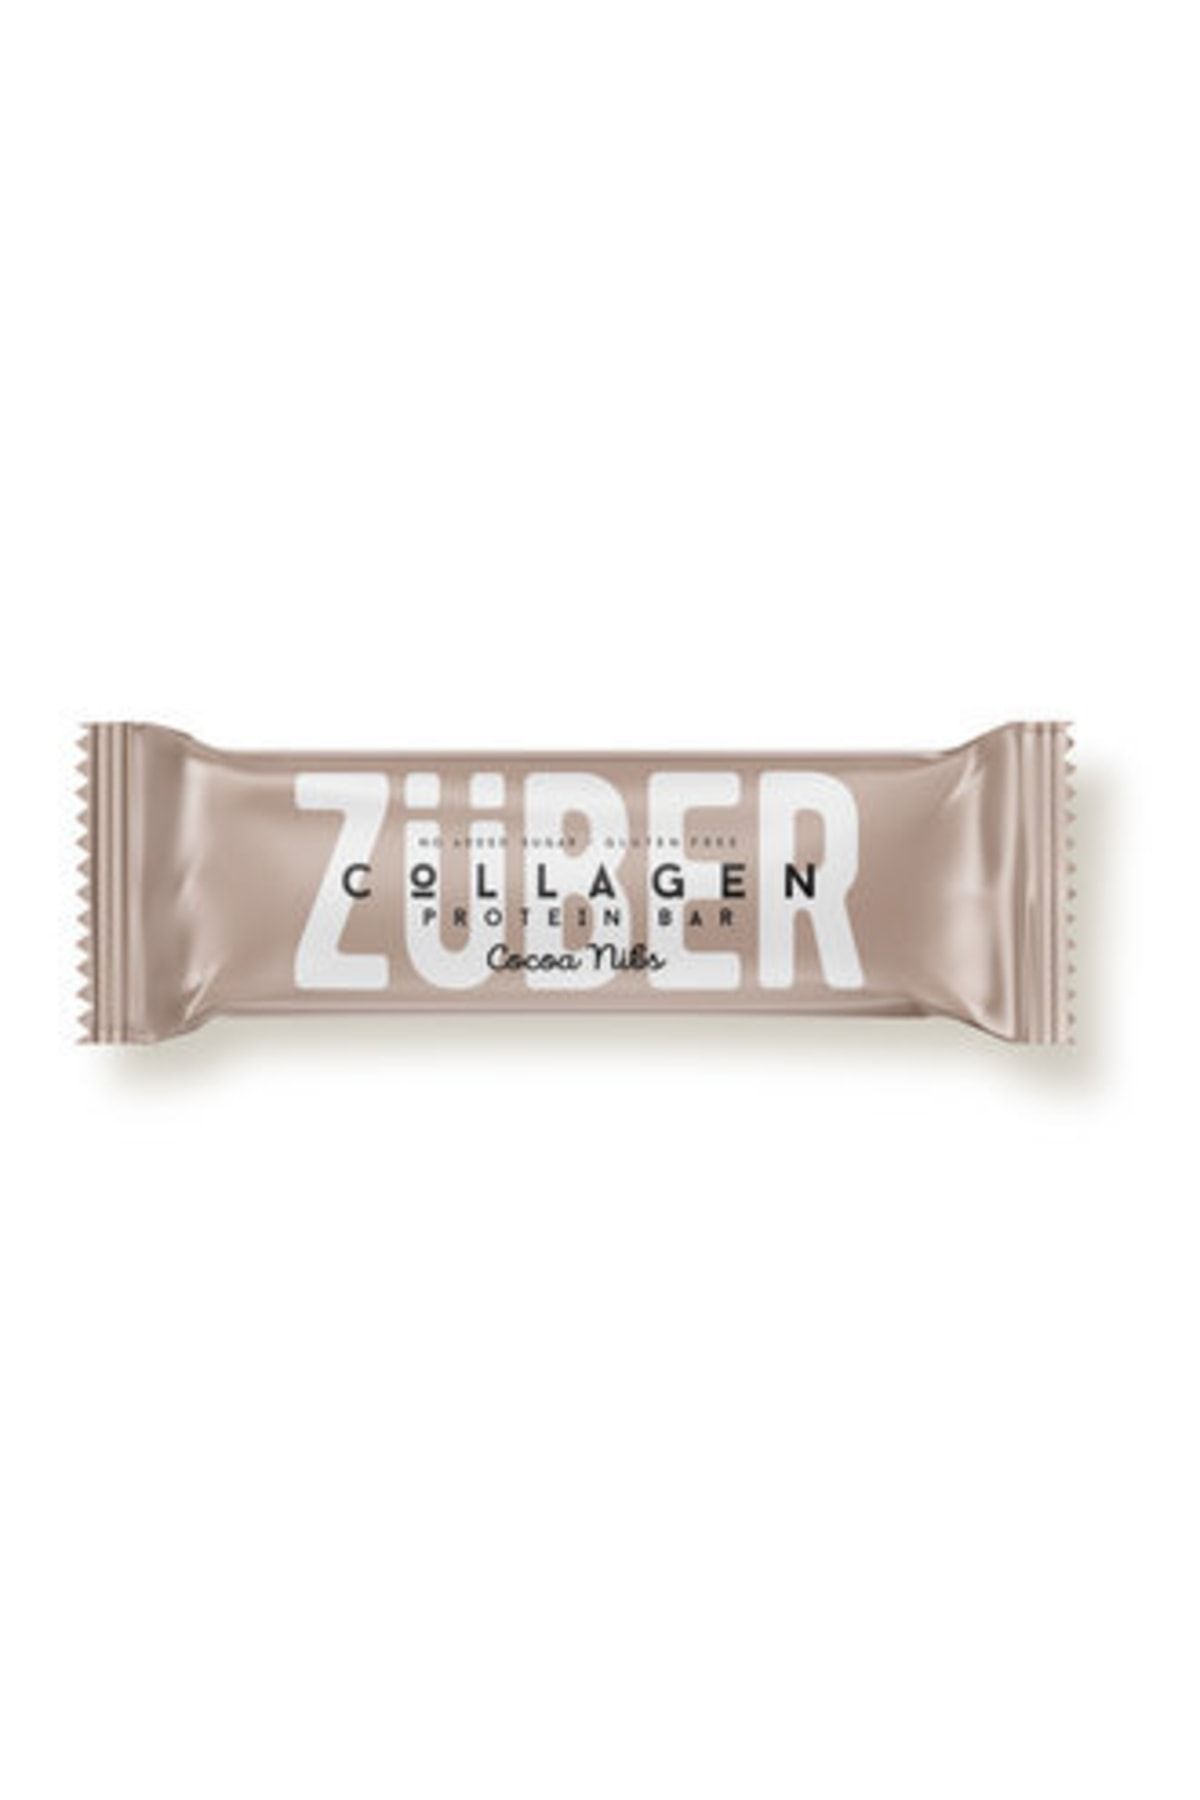 Züber ( ETİ PETİTO HEDİYE ) Züber Kakao Çekirdekli Kolajen Proteinli Bar 35G ( 2 ADET )